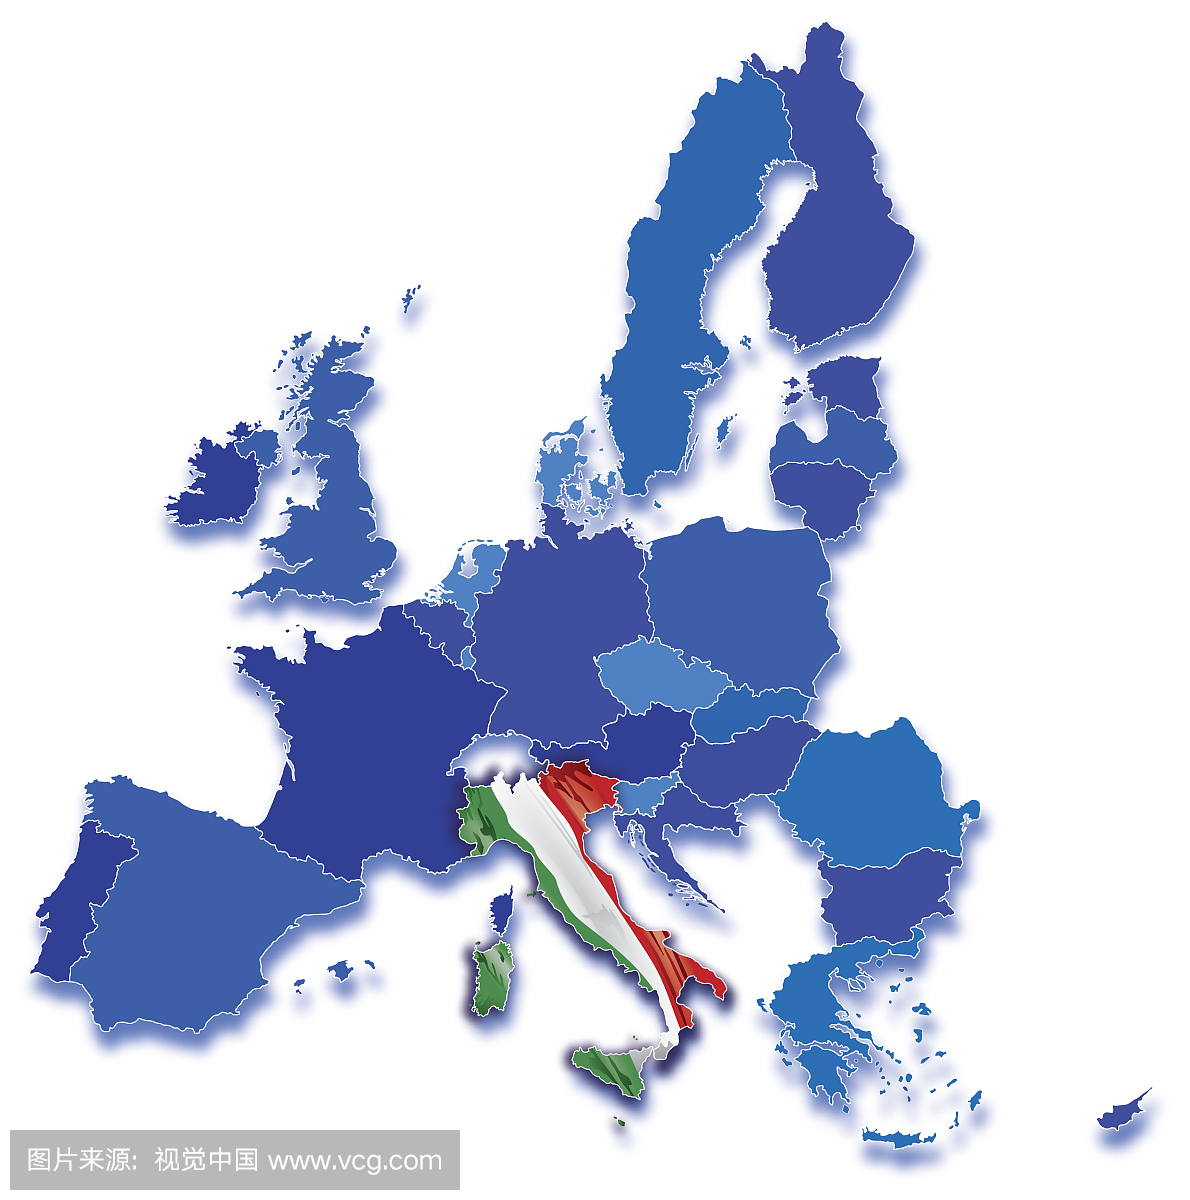 意大利在欧洲共同体地图上与所有国家